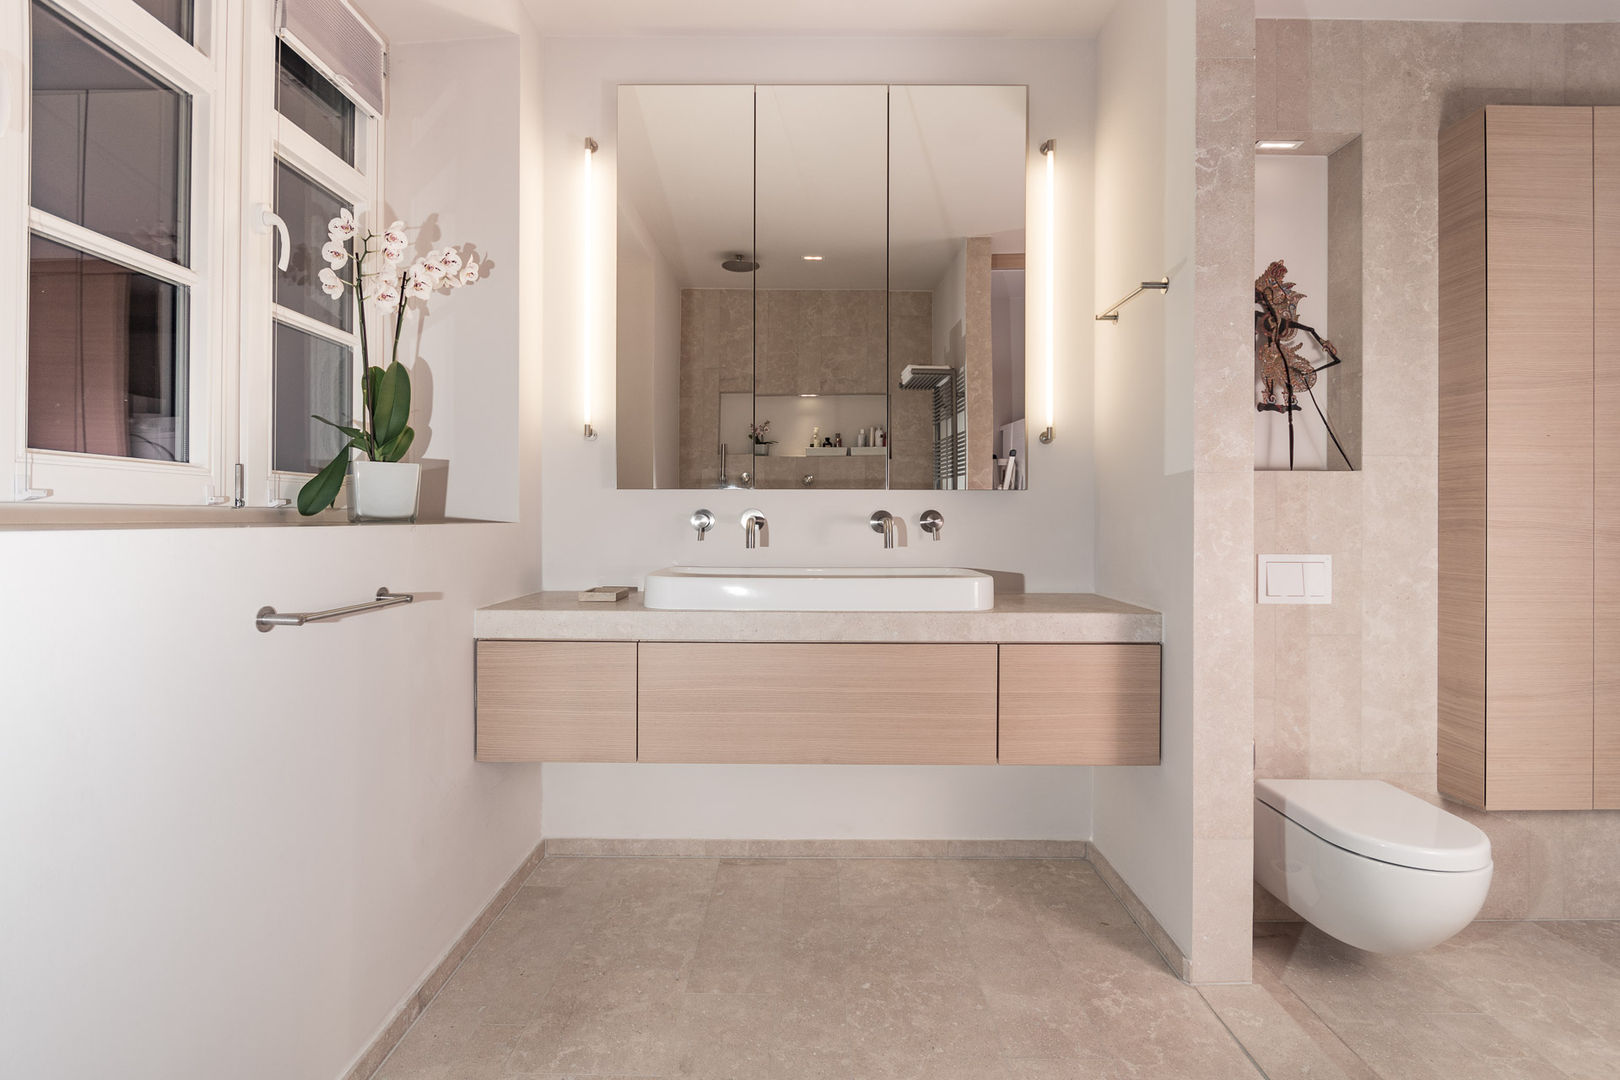 сучасний by Vivante, Сучасний bathroom,basin,interior,design,basin